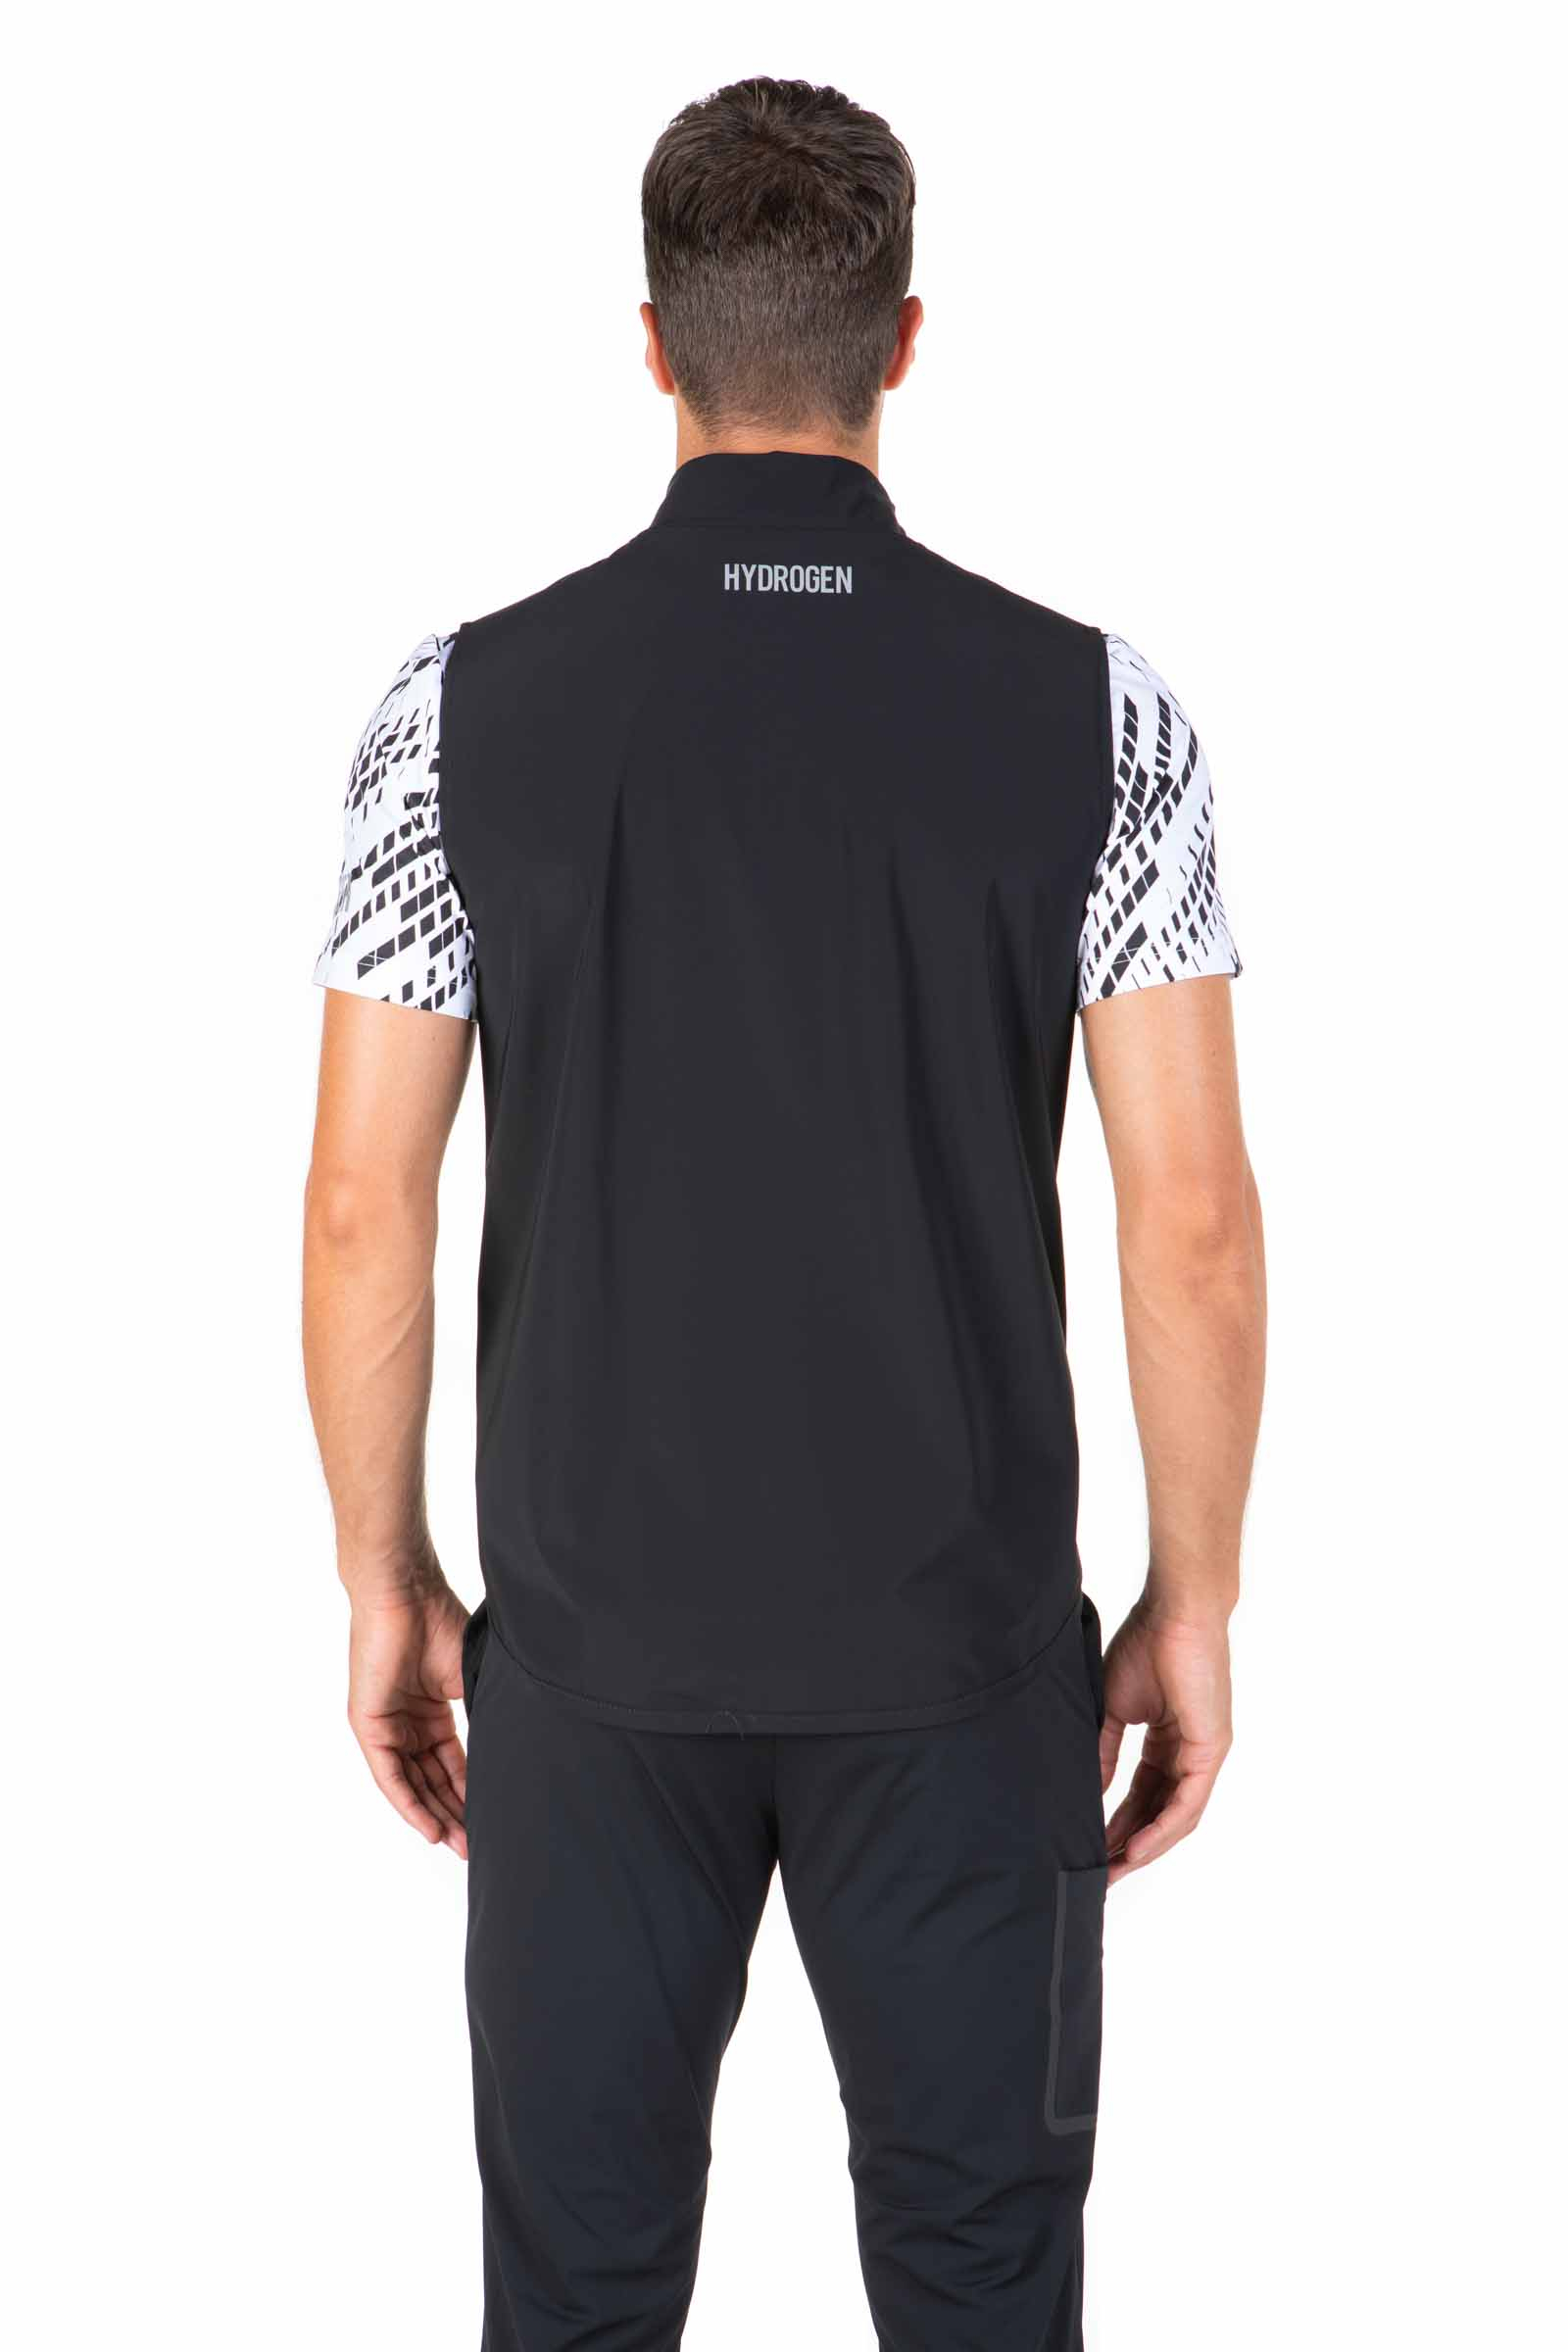 GOLF VEST - BLACK - Hydrogen - Luxury Sportwear